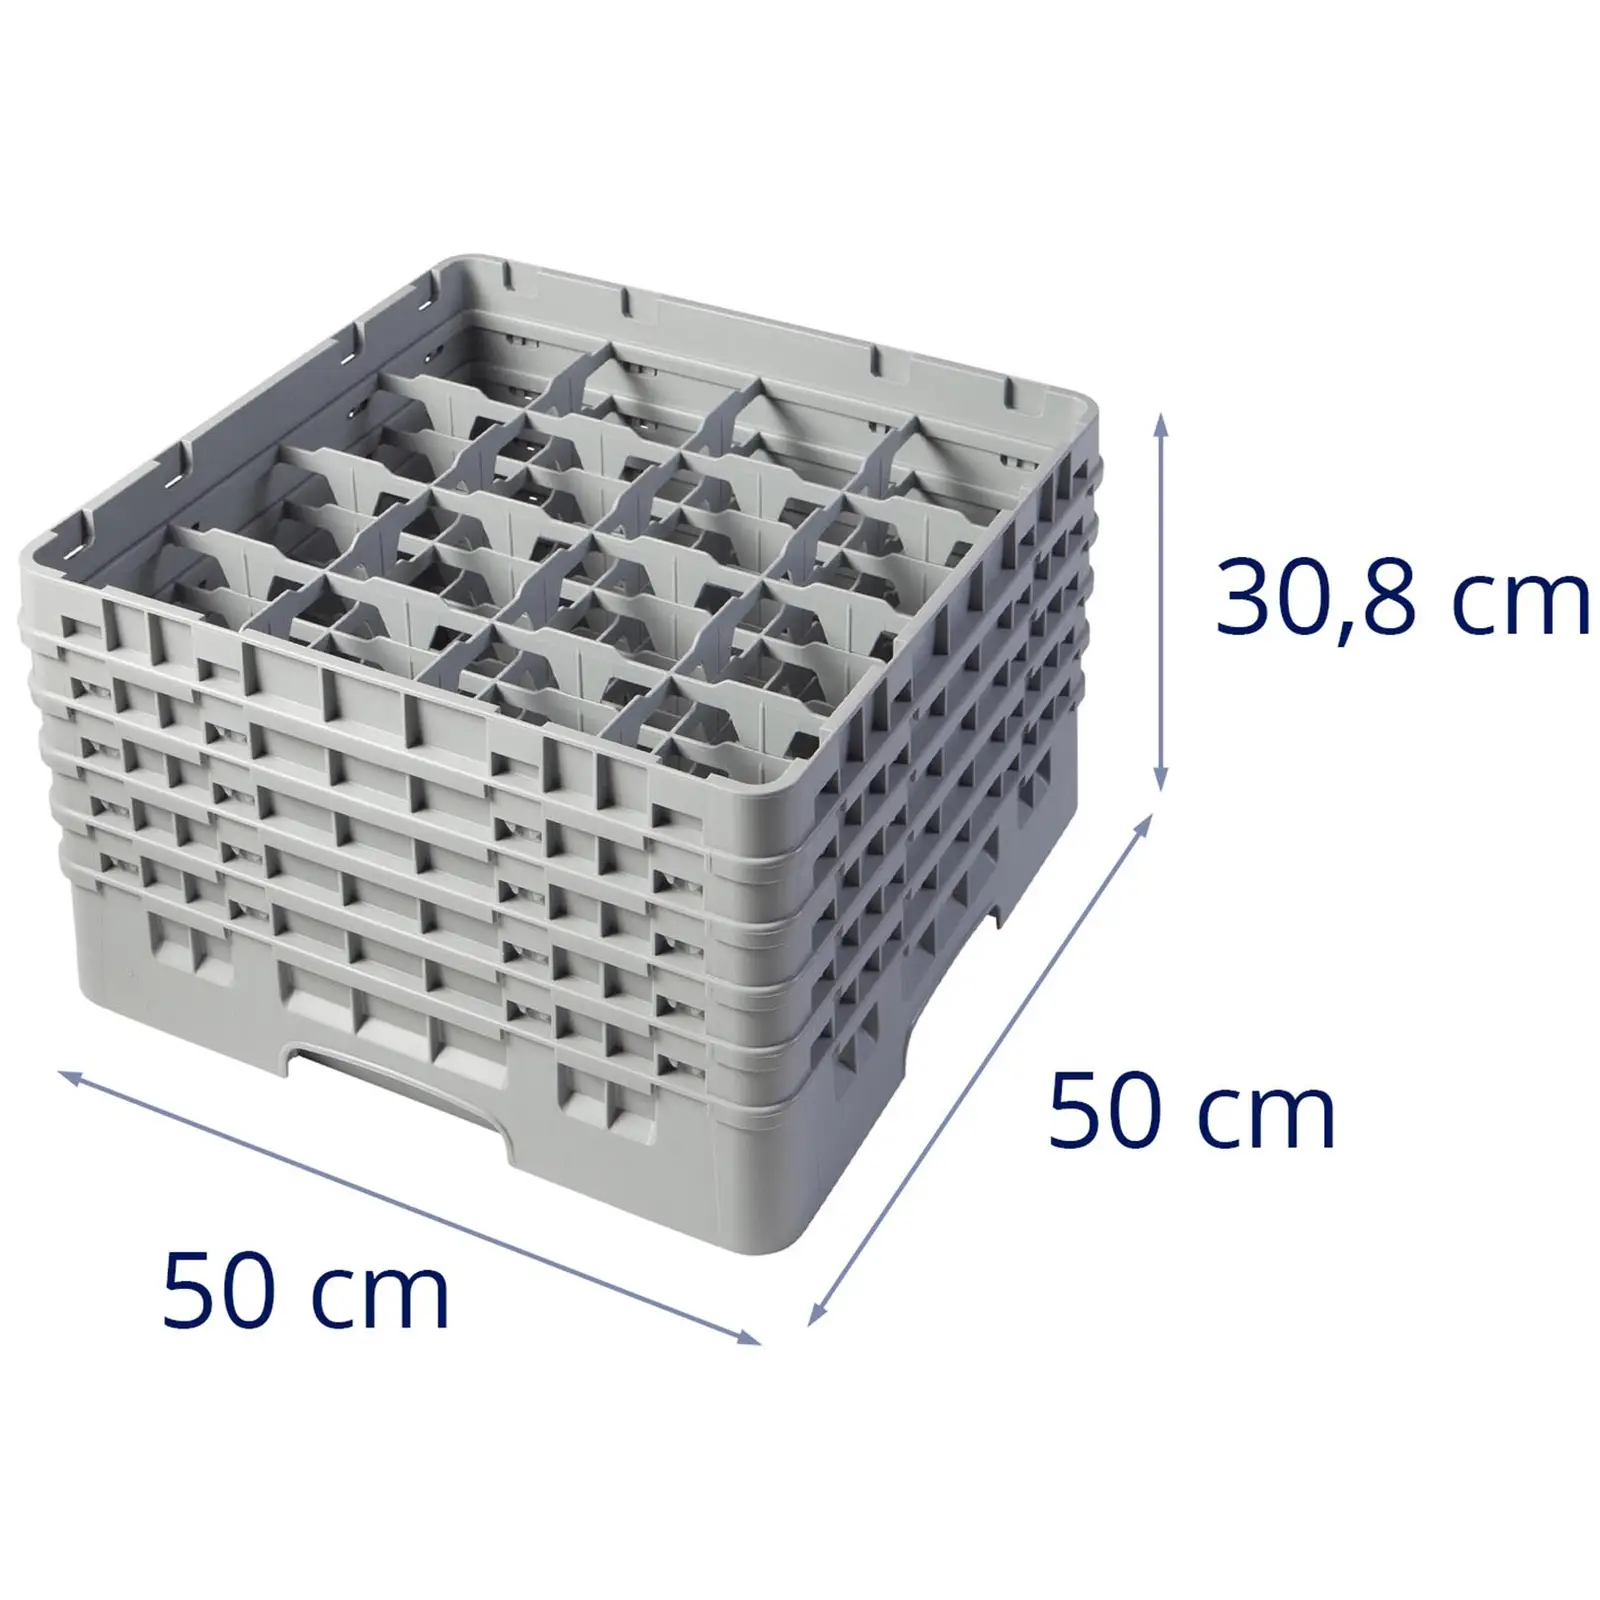 Opvaskekurv til glas til industriopvaskemaskine - 16 rum - 50 x 50 x 30,8 cm - glashøjde: 25,7 cm